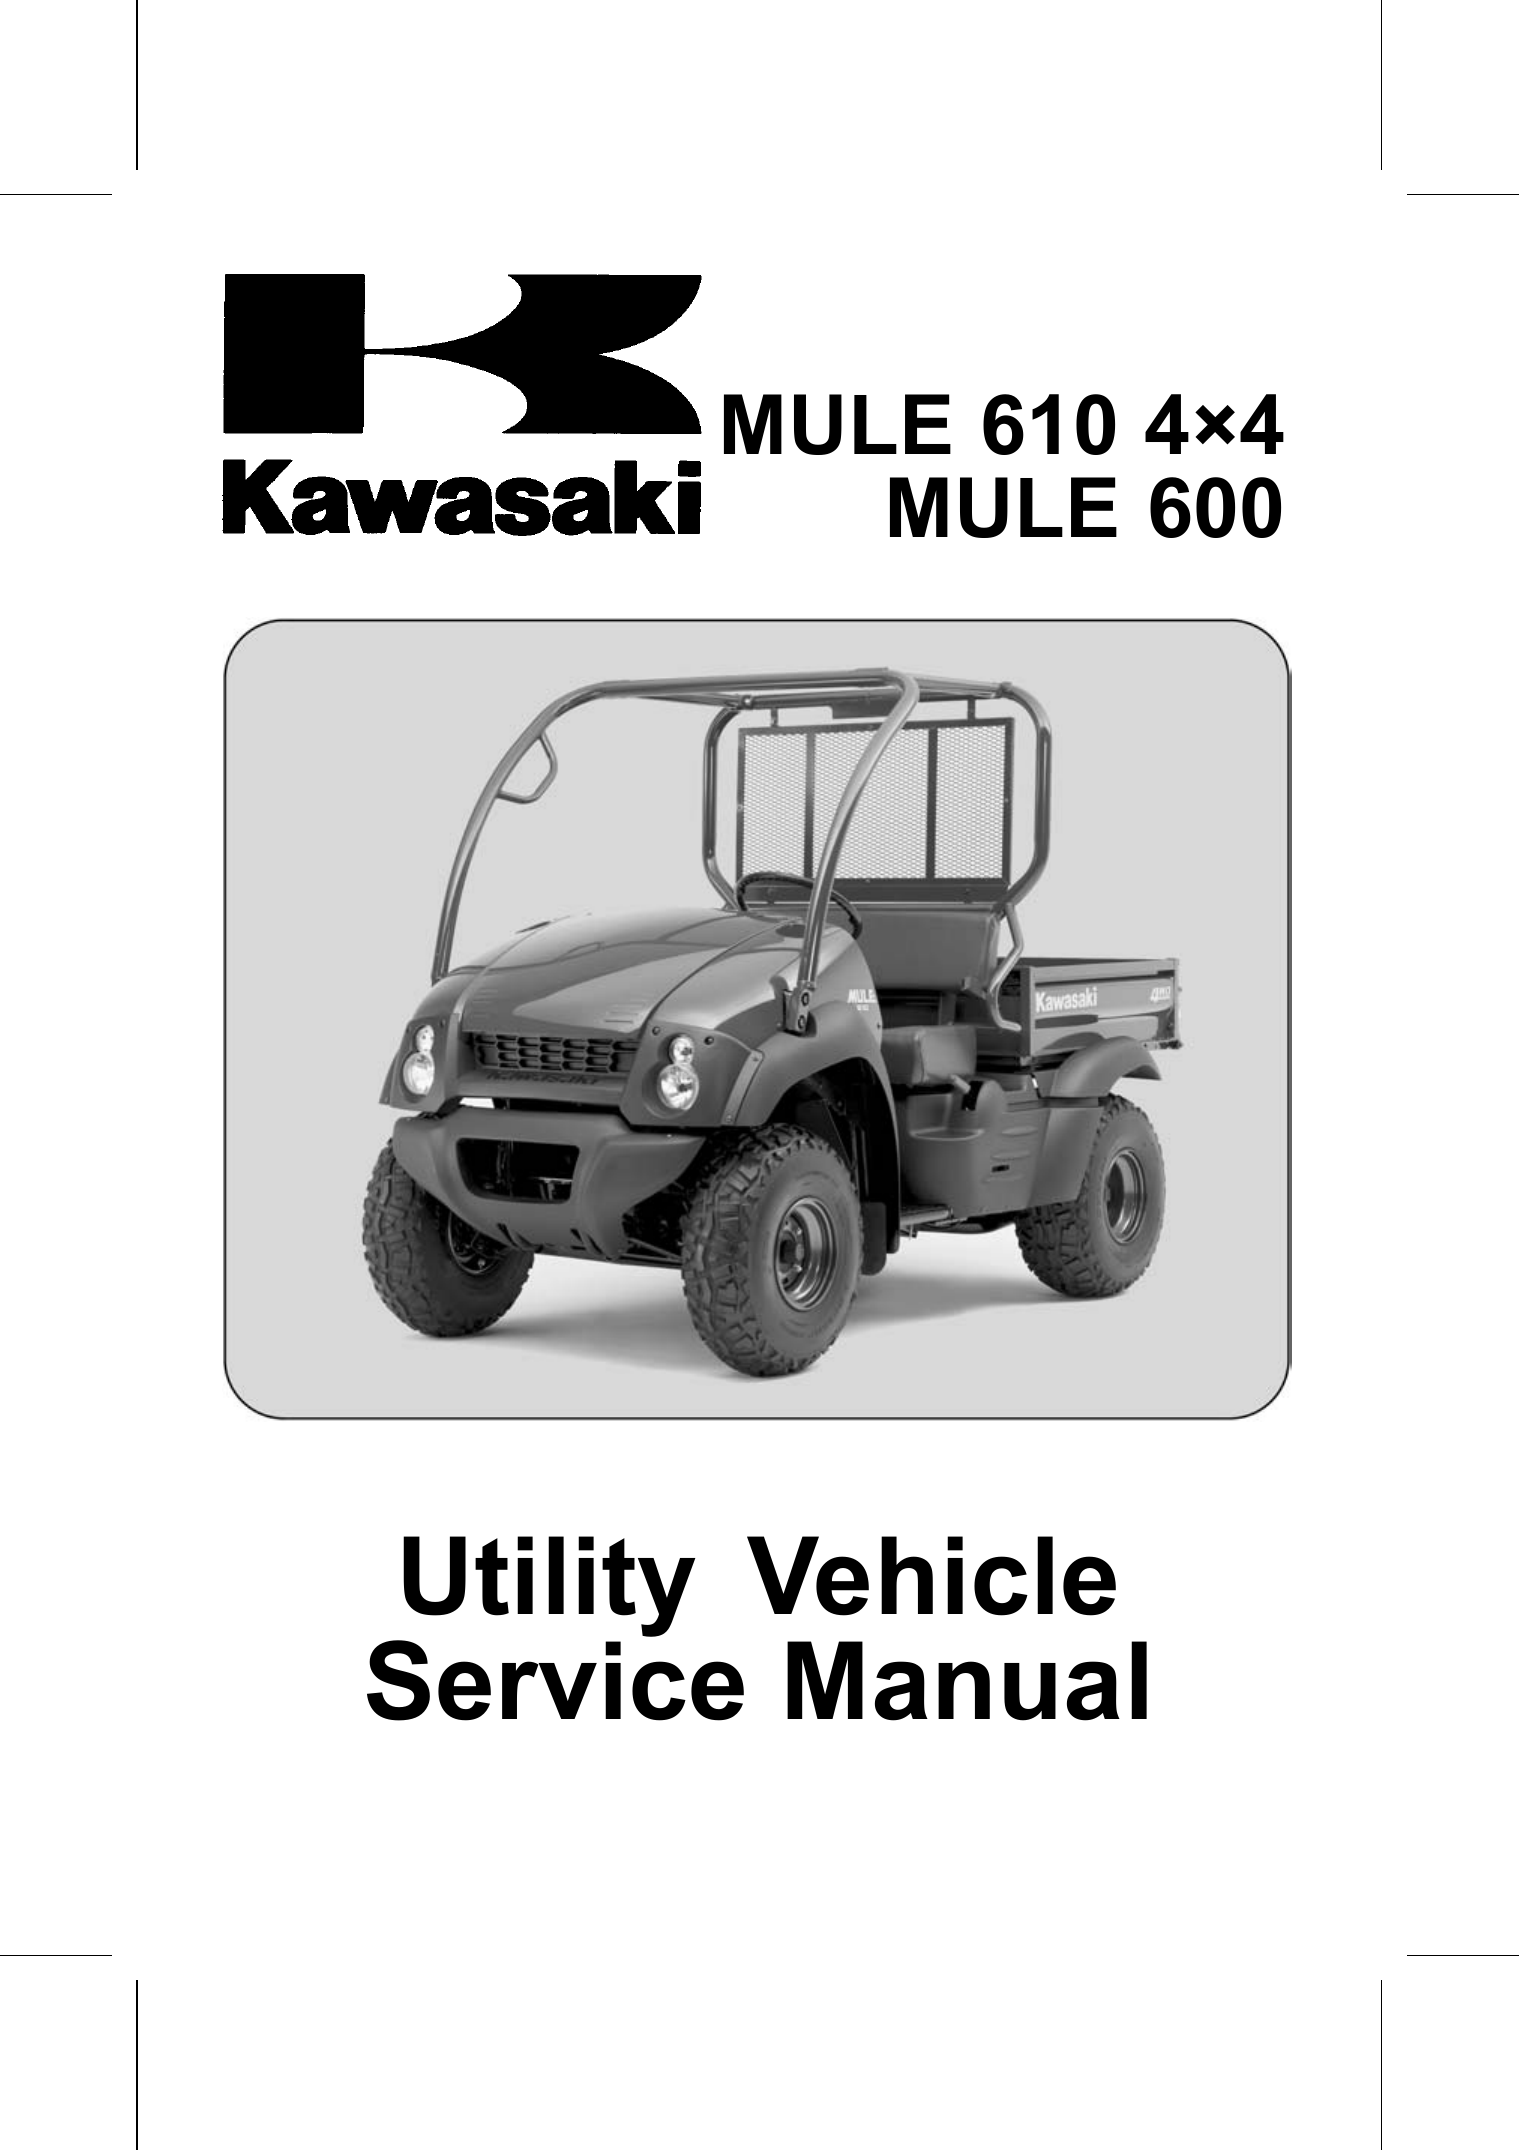 2003-2009 Kawasaki Mule 610,  Mule 600, KAF400, 4x4 service manual Preview image 6